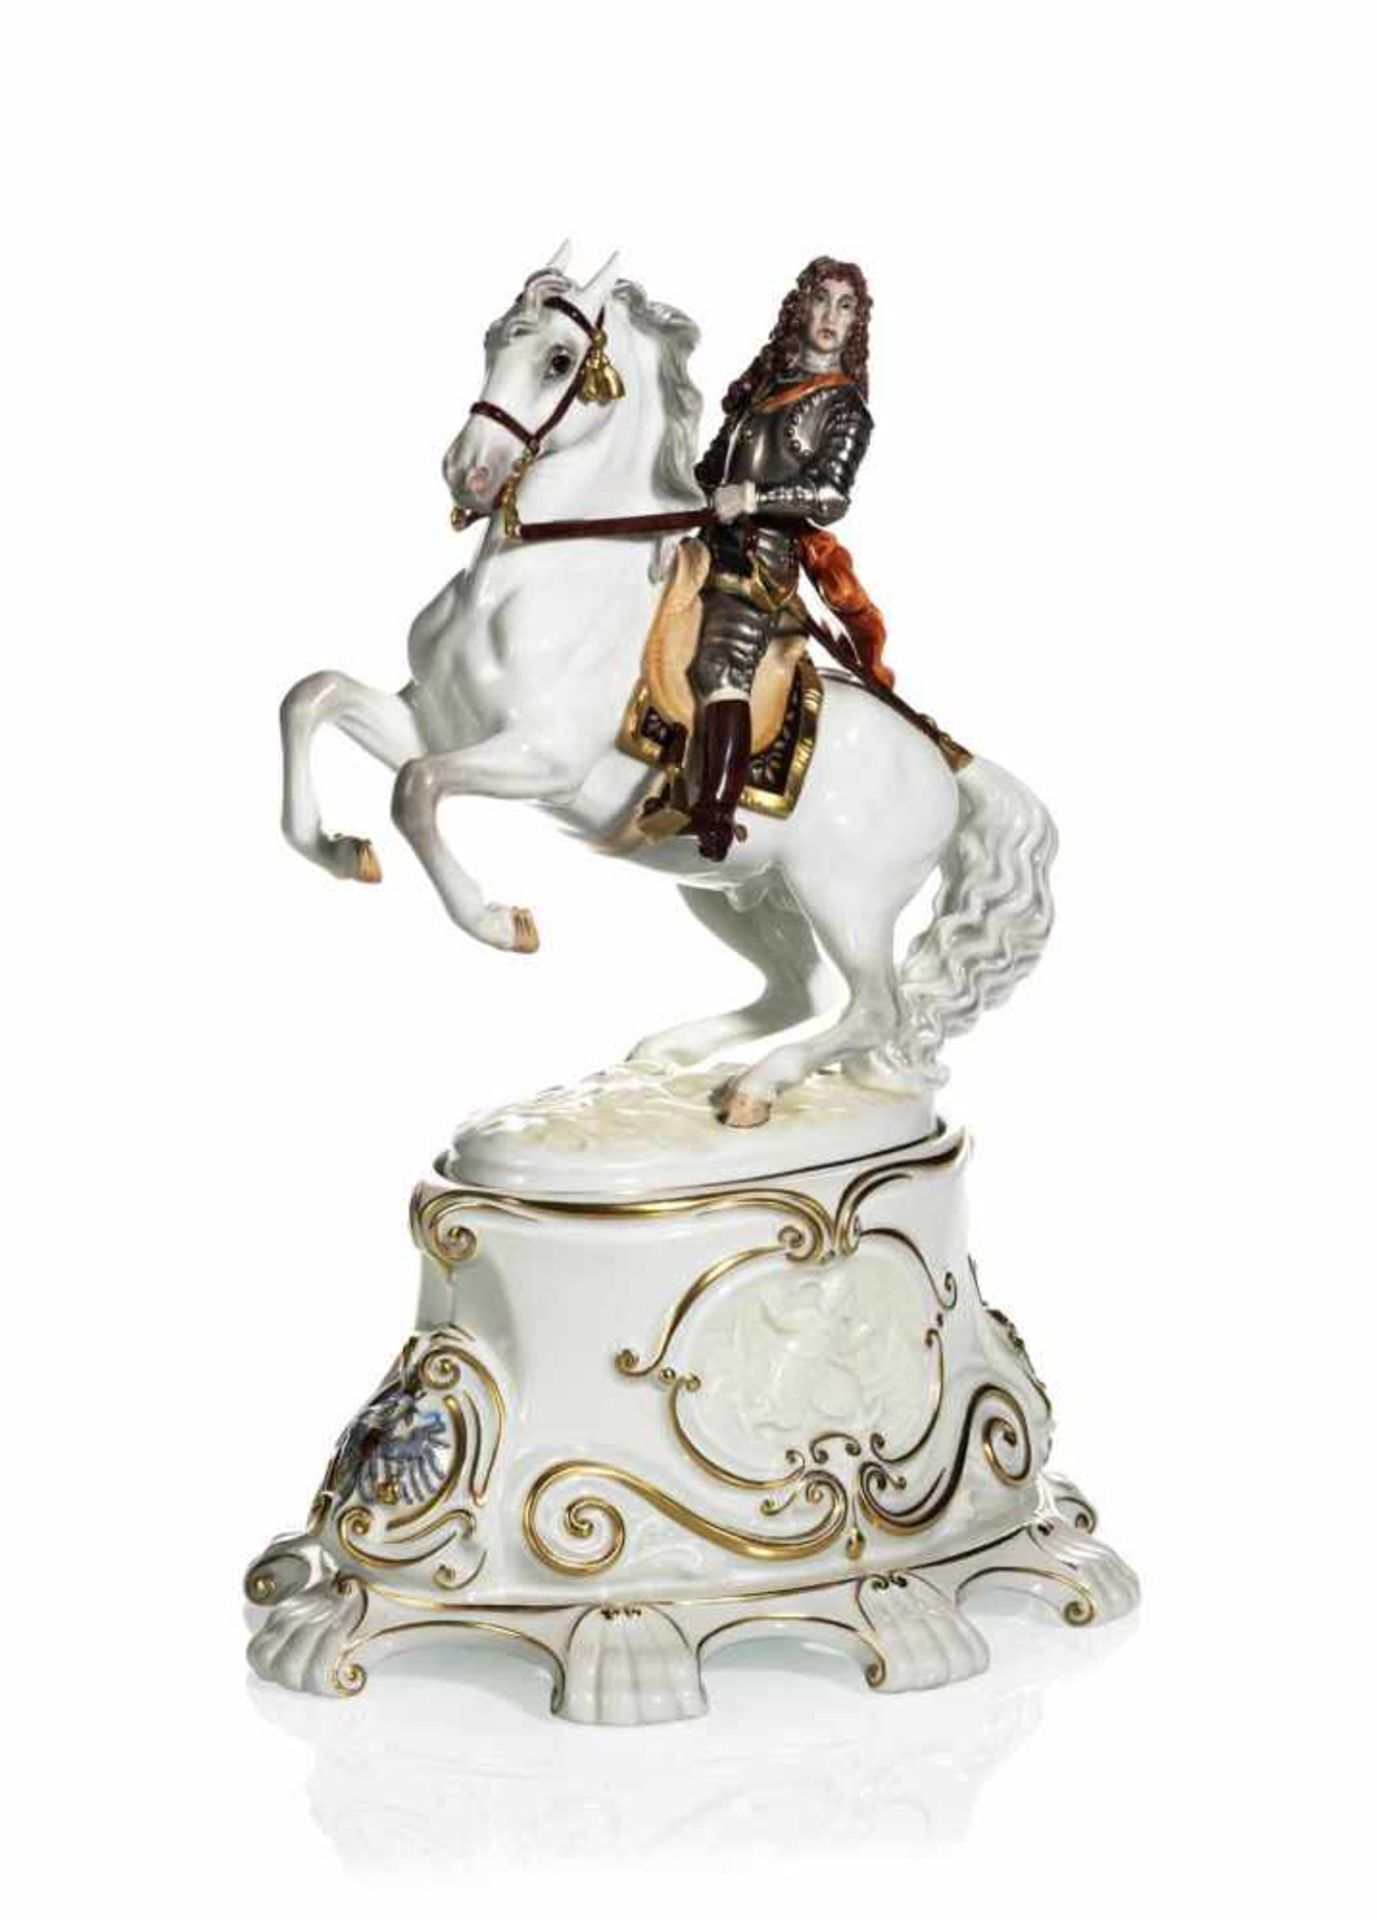 Prinz Eugen von Savoyen zu PferdWien, Augarten, 20. JahrhundertH. 25,5 cmPrinz Eugen von Savoyen auf